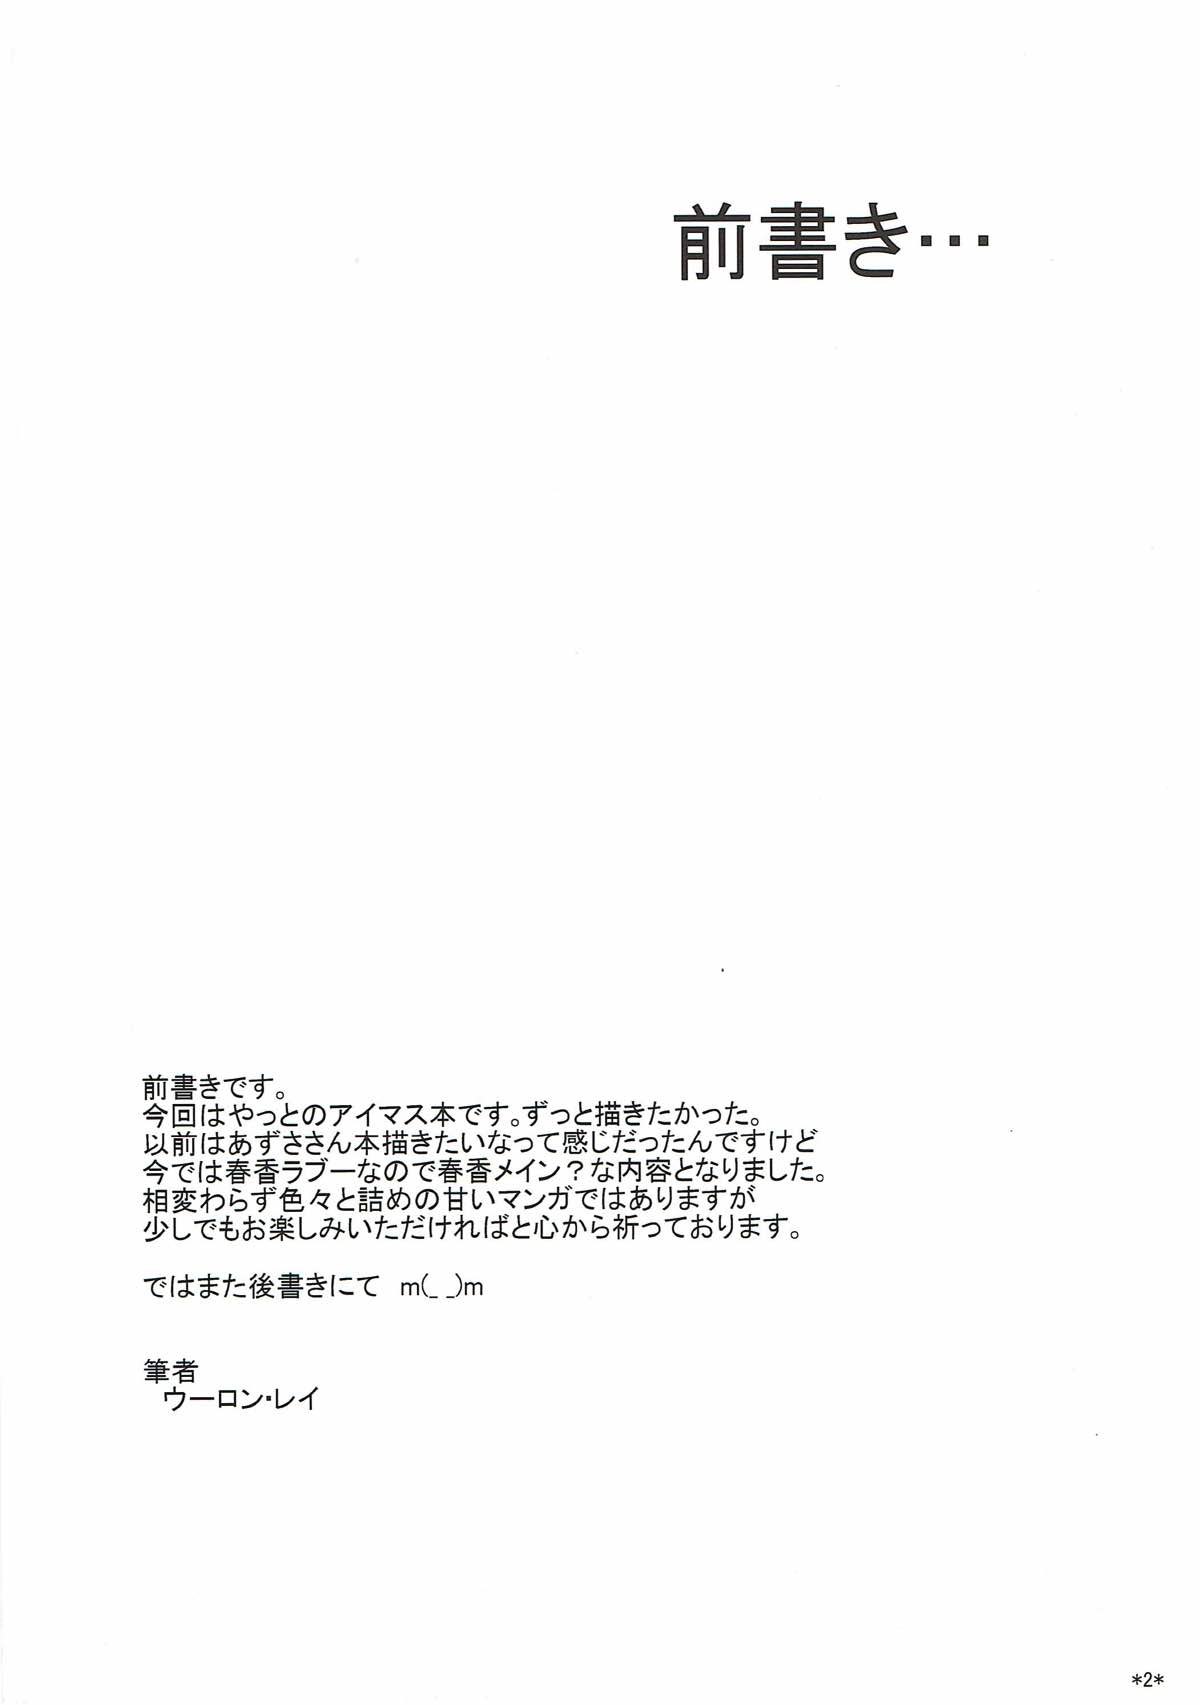 [モンモー牧場 (ウーロン・レイ)] アイドルランクZ (アイドルマスター) [2012年1月29日]